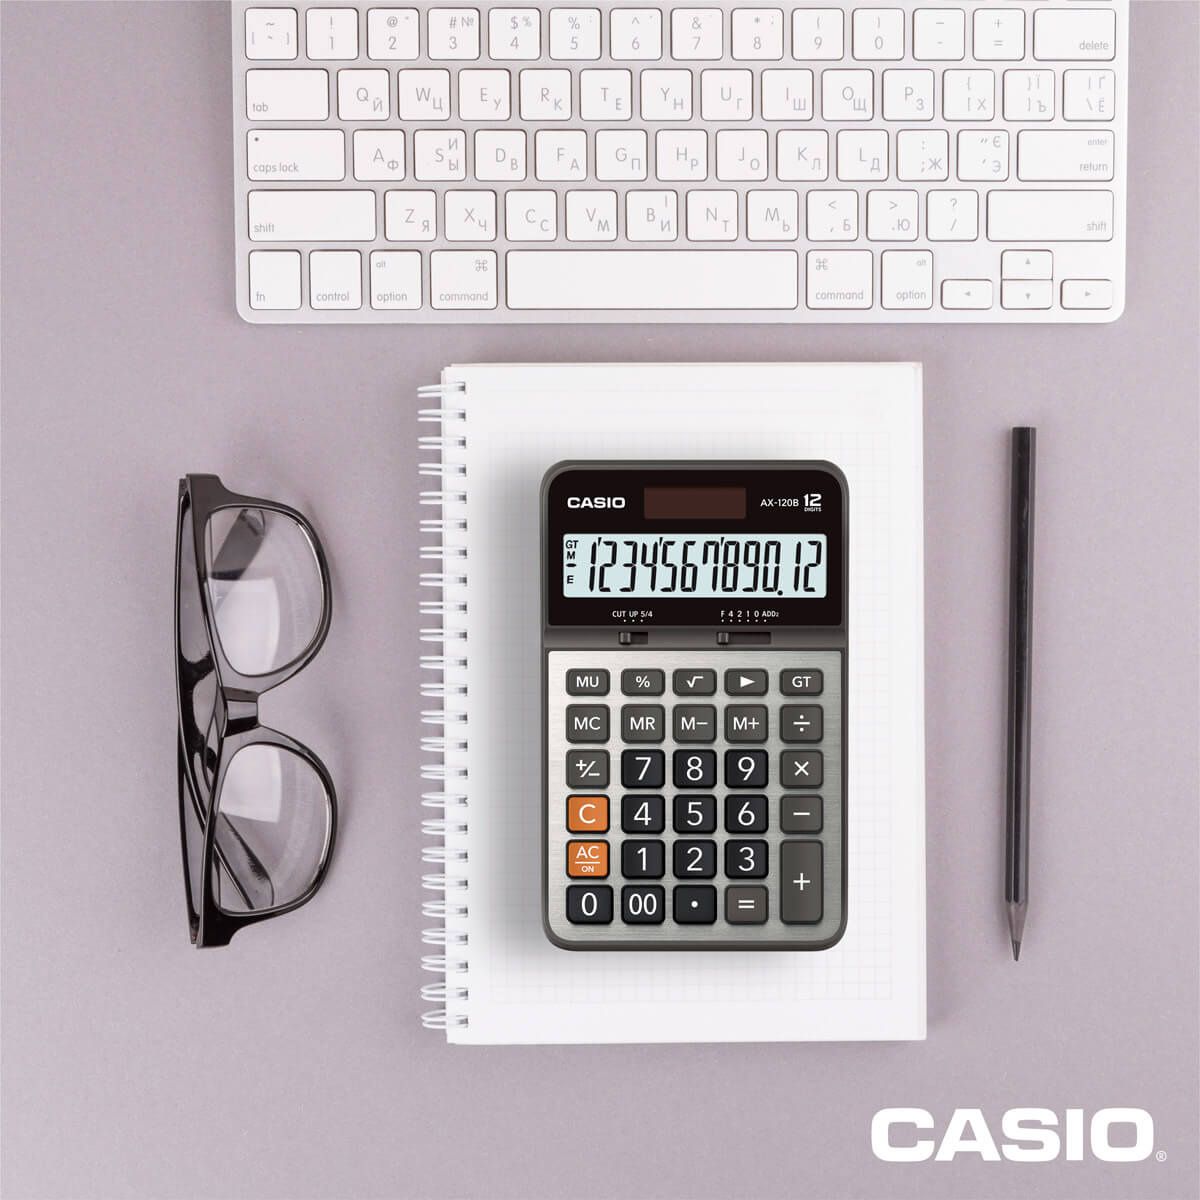 Calculadora de Escritorio Casio Ax-120b Gris 12 Dígitos